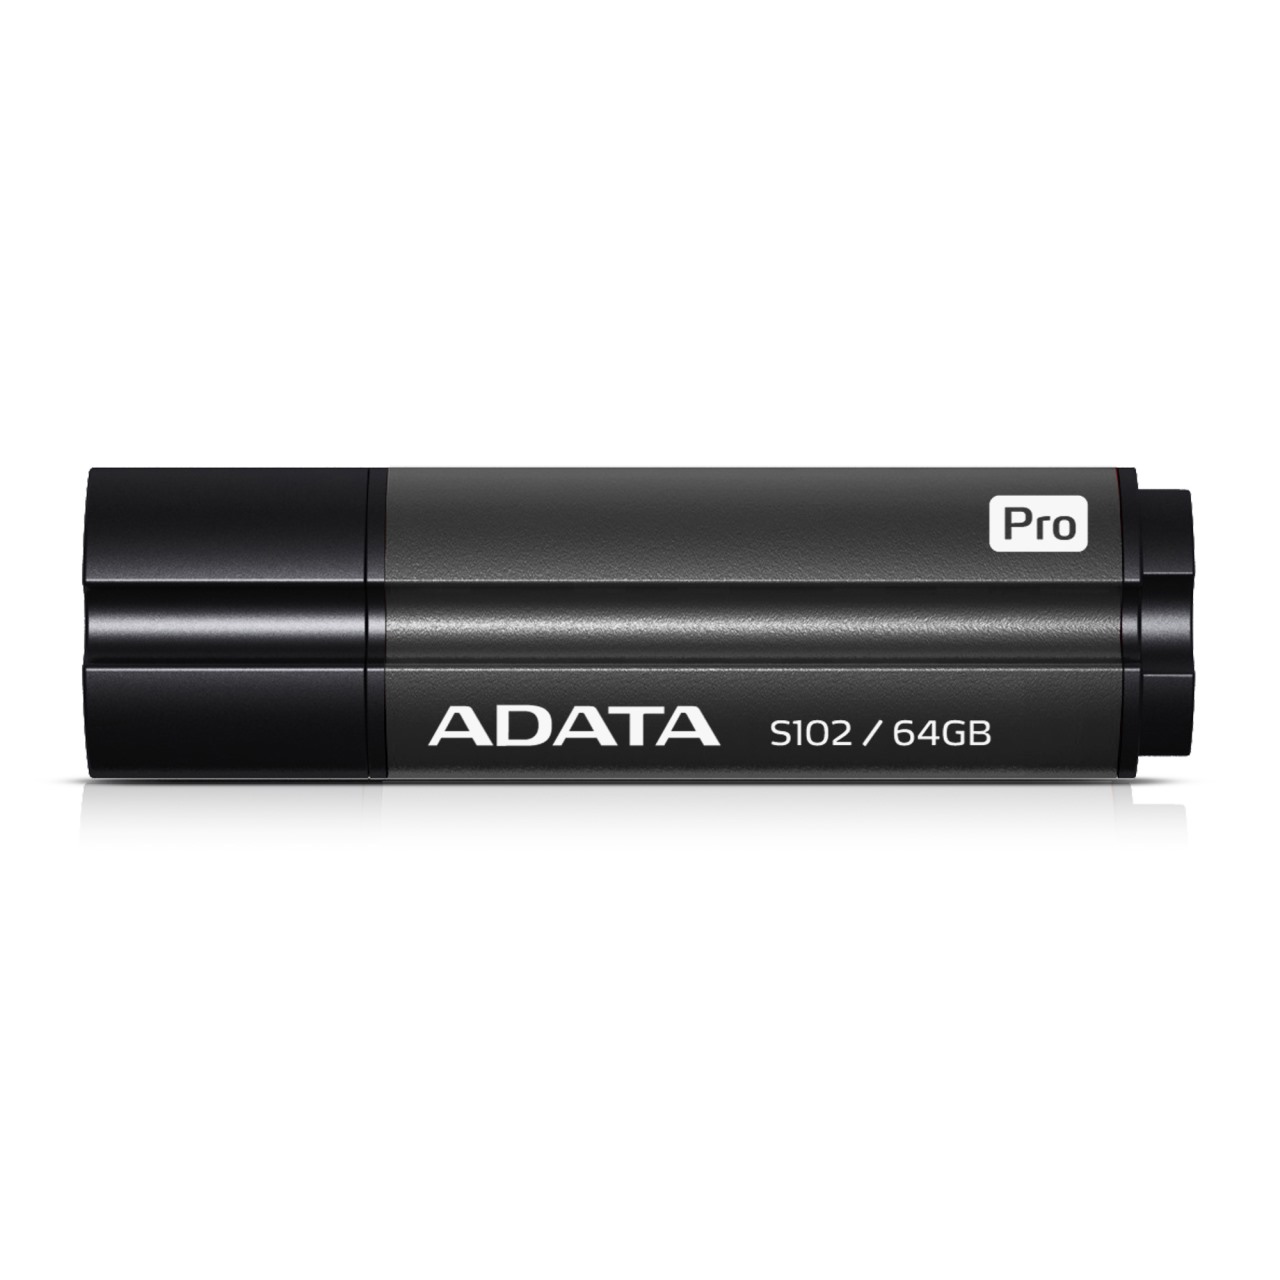 ADATA S102 Flash Drive 64GB